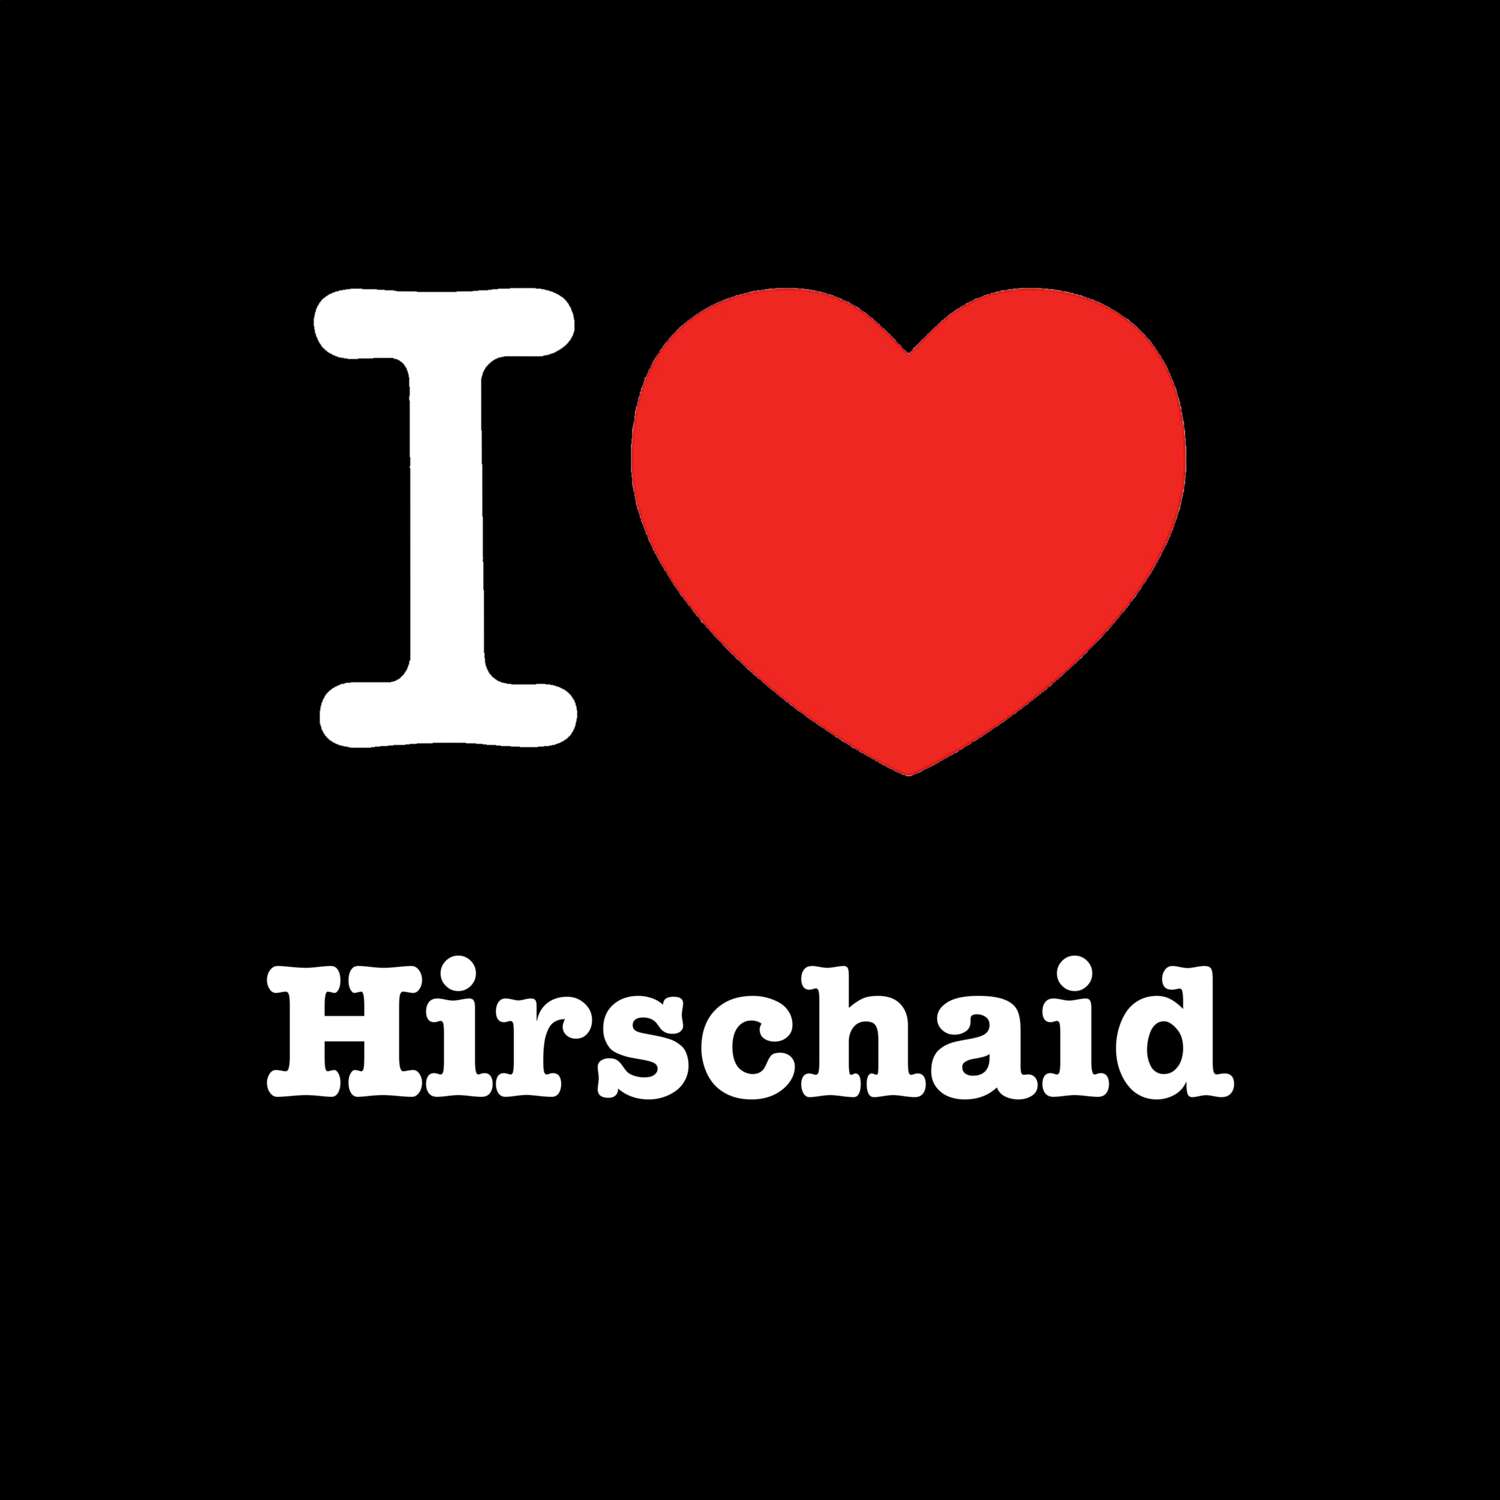 Hirschaid T-Shirt »I love«